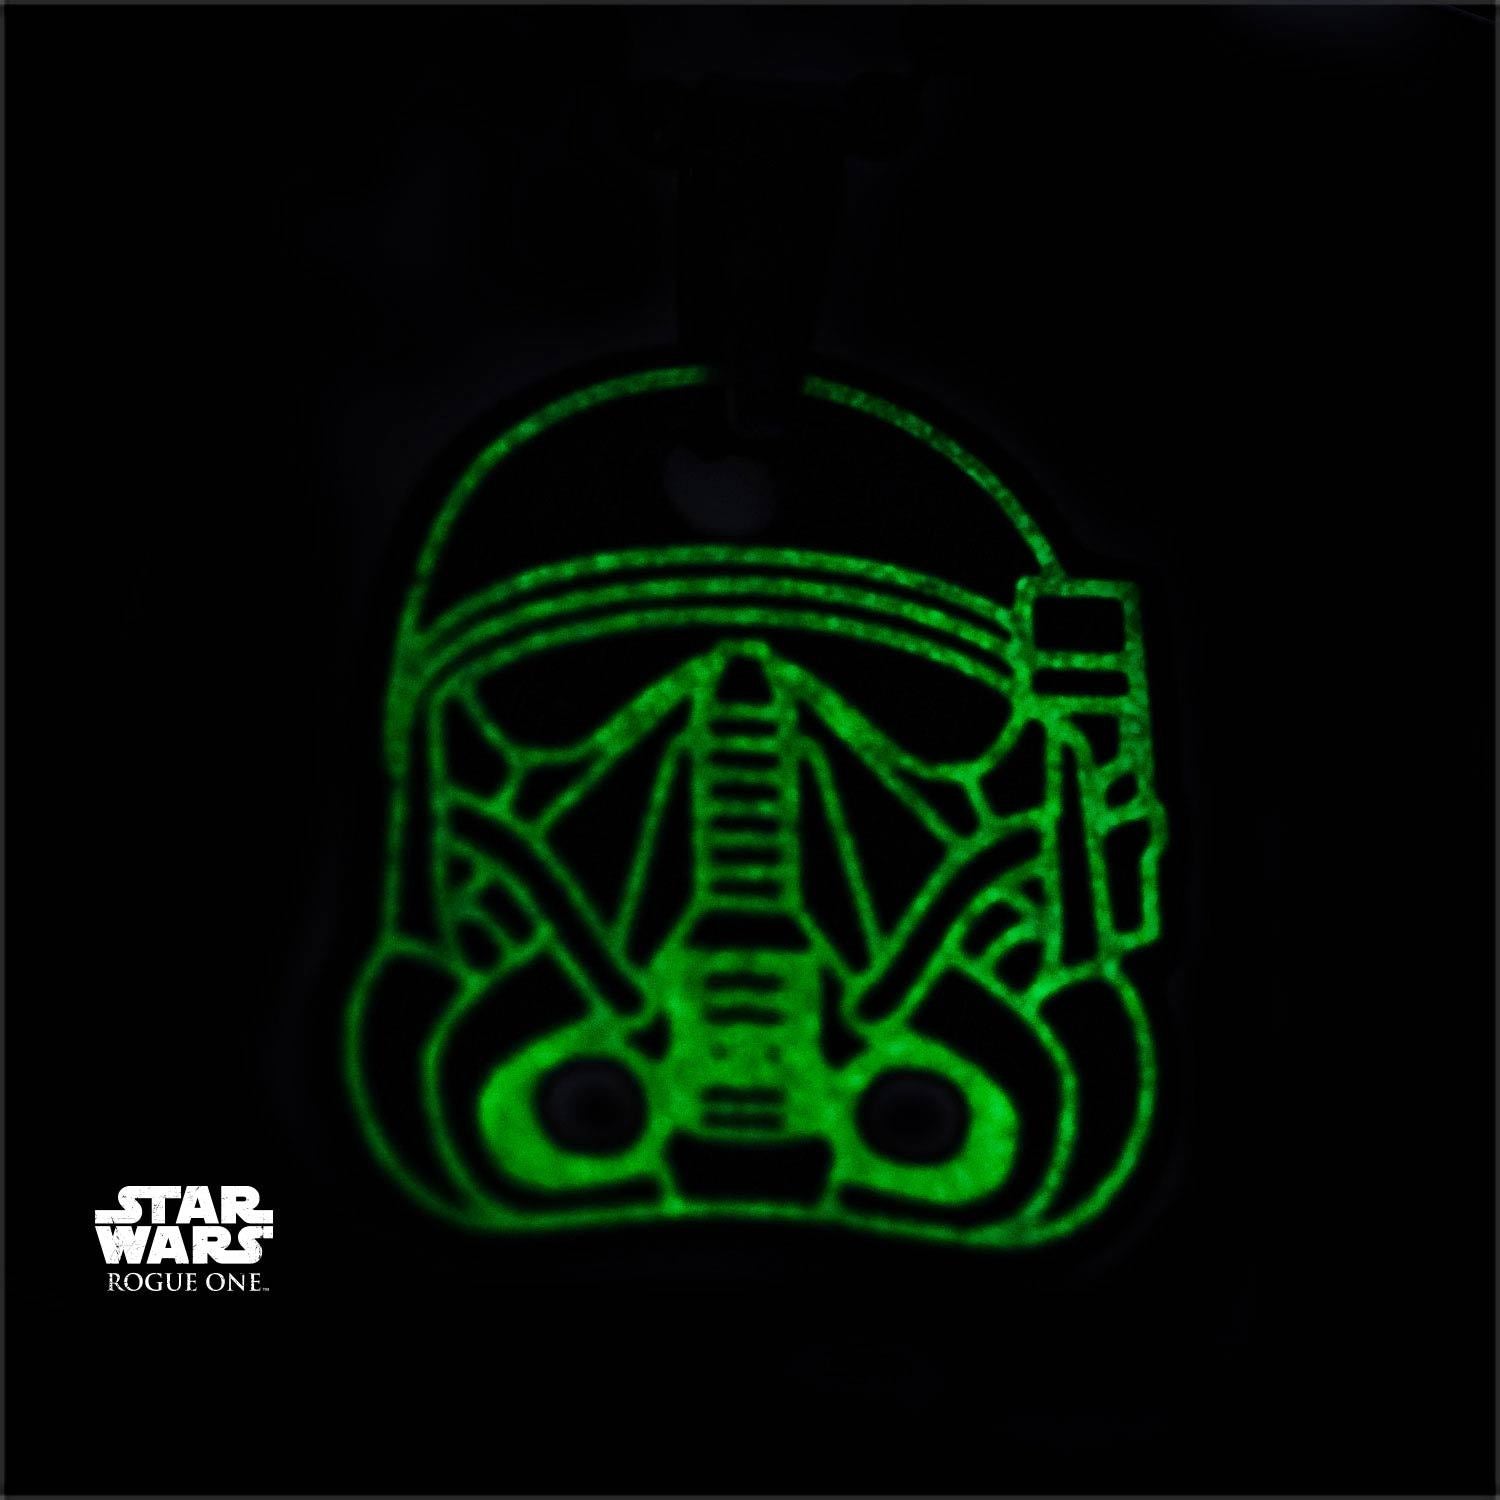 Star Wars Rogue One Death Trooper Glow in the Dark Enamel Pendant Necklace